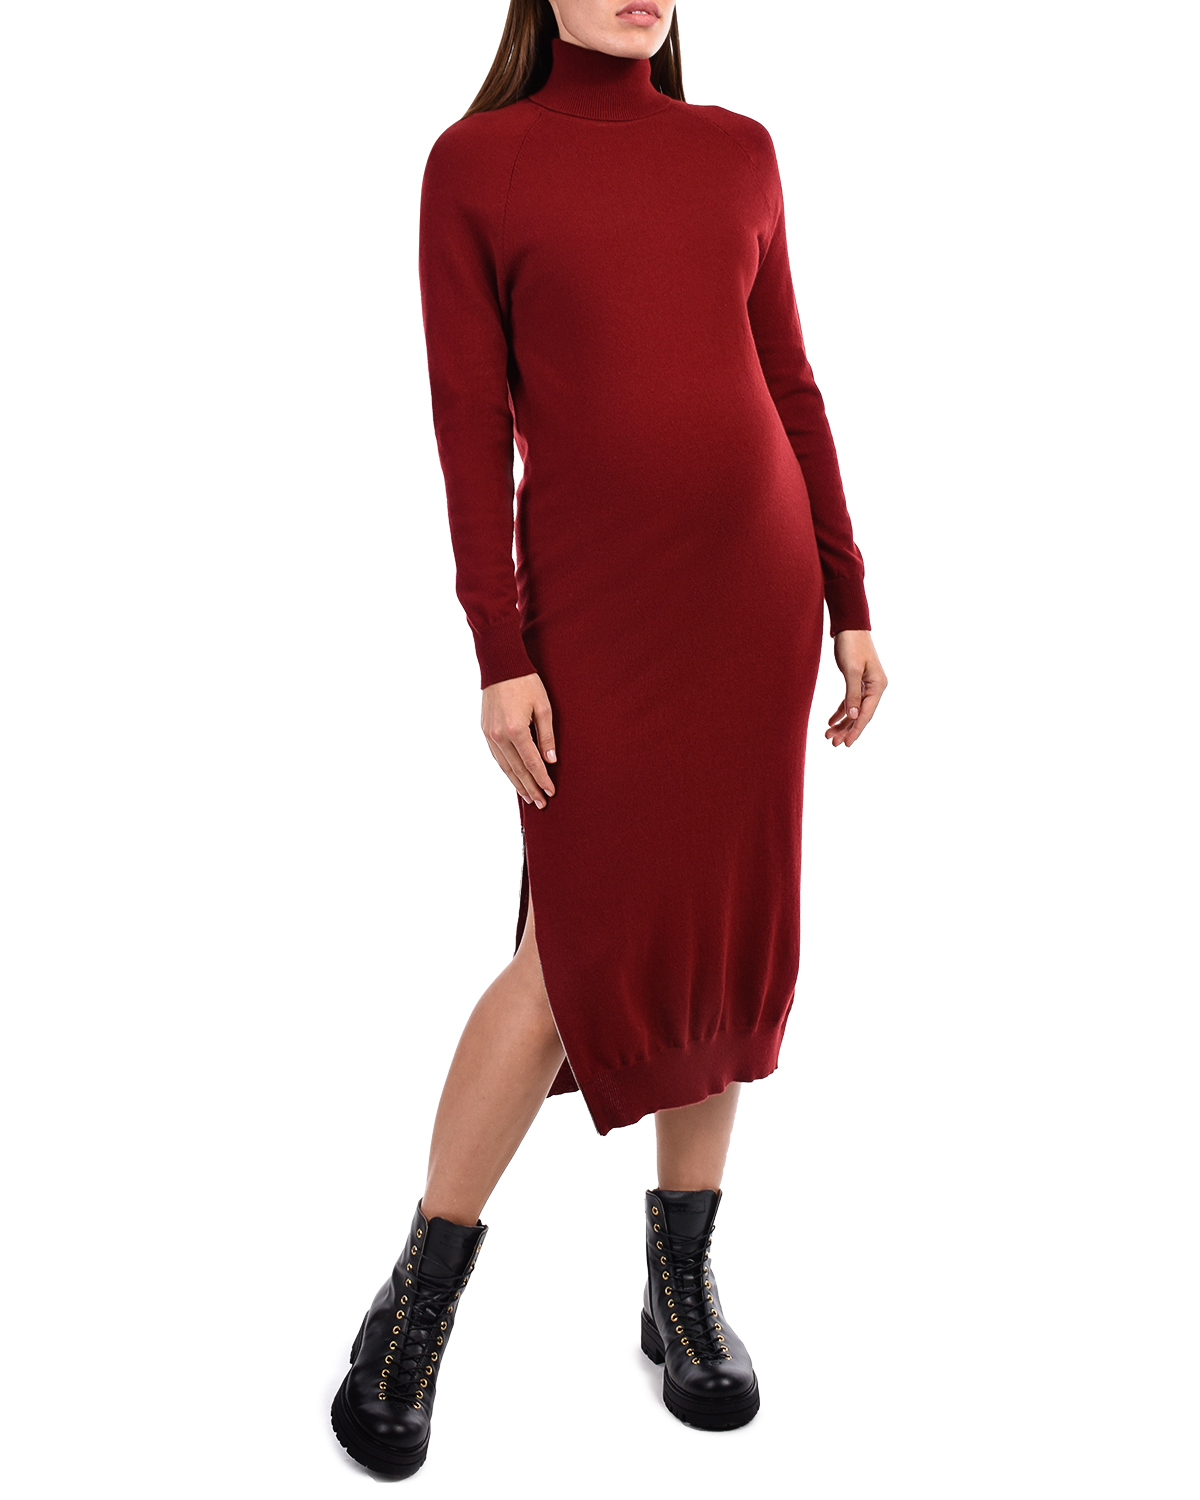 Бордовое платье-водолазка из шерсти и кашемира MRZ - фото 4